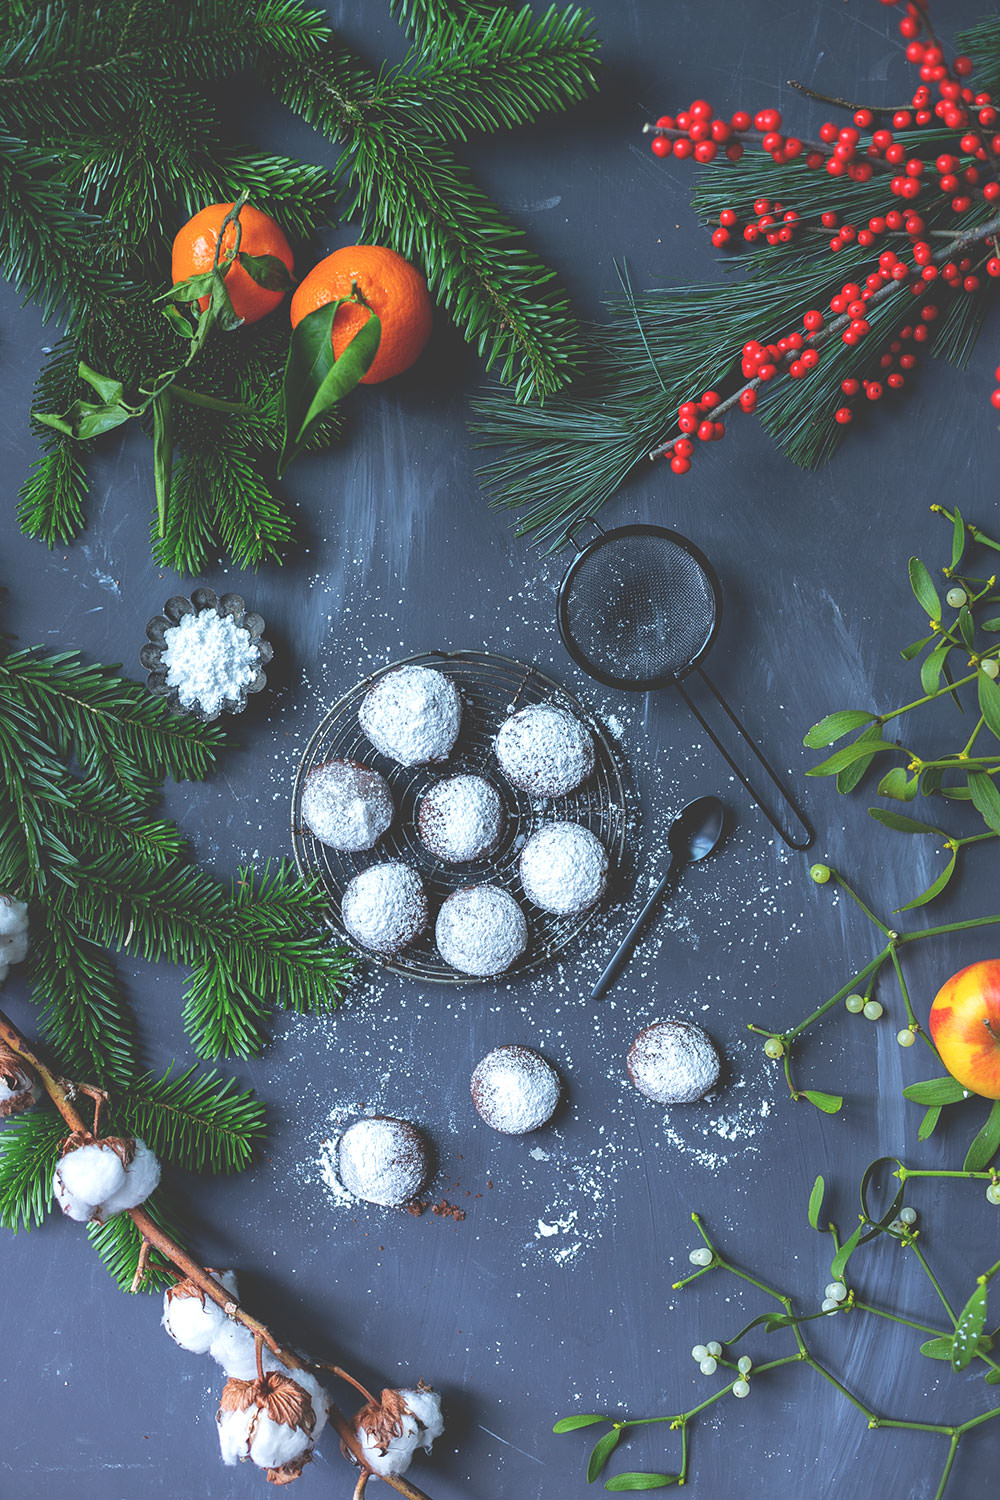 Rezept für schnelle, knusprige Espresso-Walnuss-Kekse | super einfach und schnell - so wird Weihnachten entspannt! | moeyskitchen.com #weihnachtsplätzchen #weihnachtskekse #cookies #plätzchen #rezepte #foodblog #weihnachten